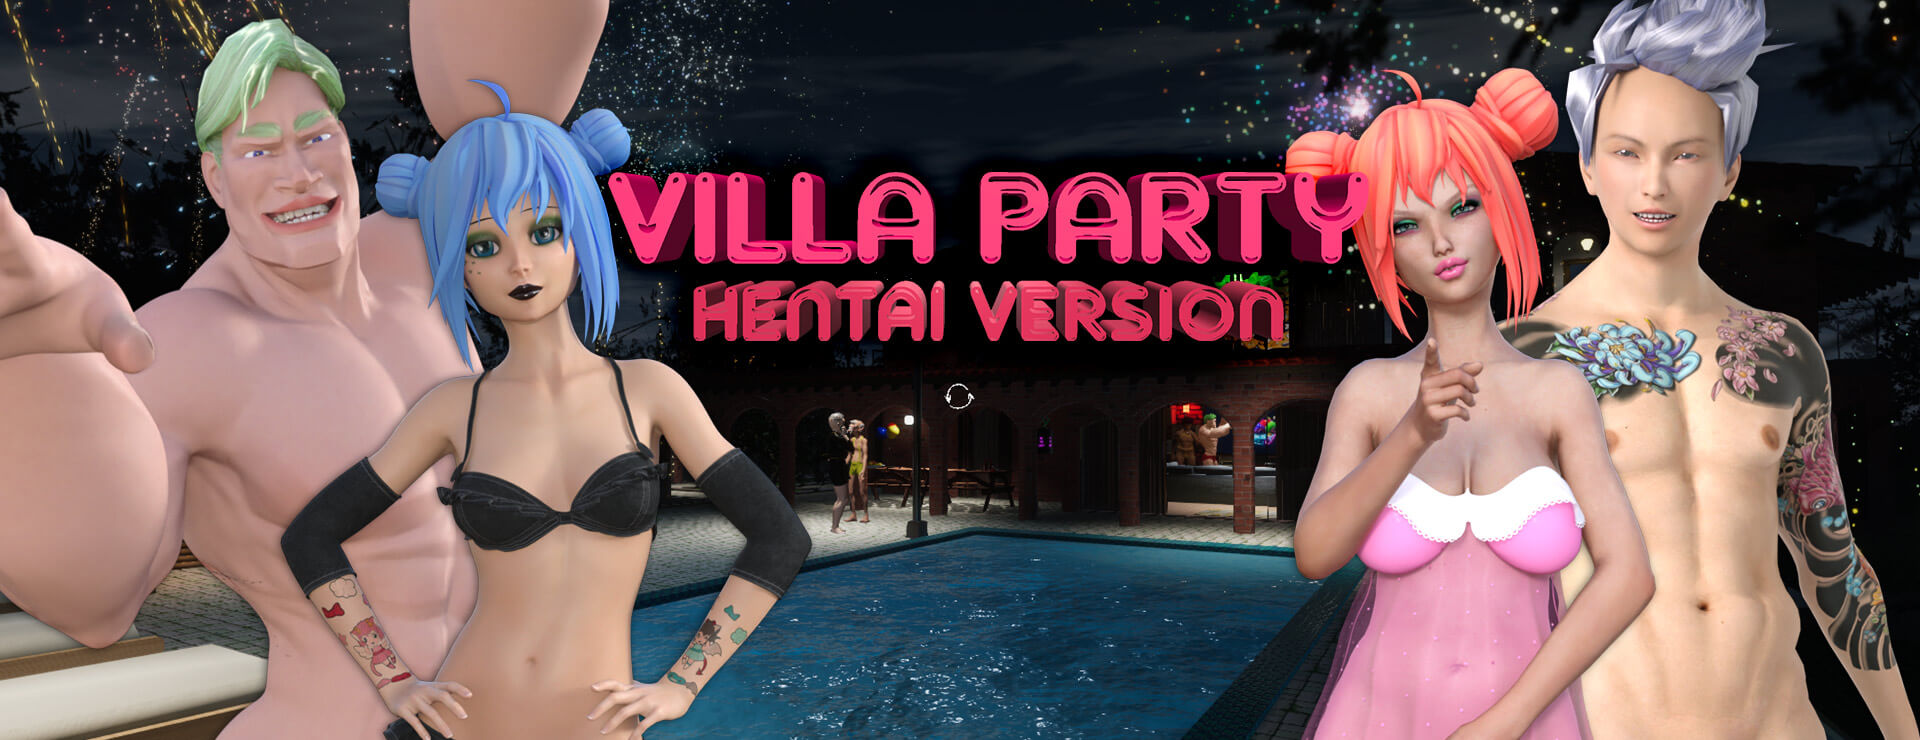 Villa Party – Hentai Version - Aventura Acción Juego